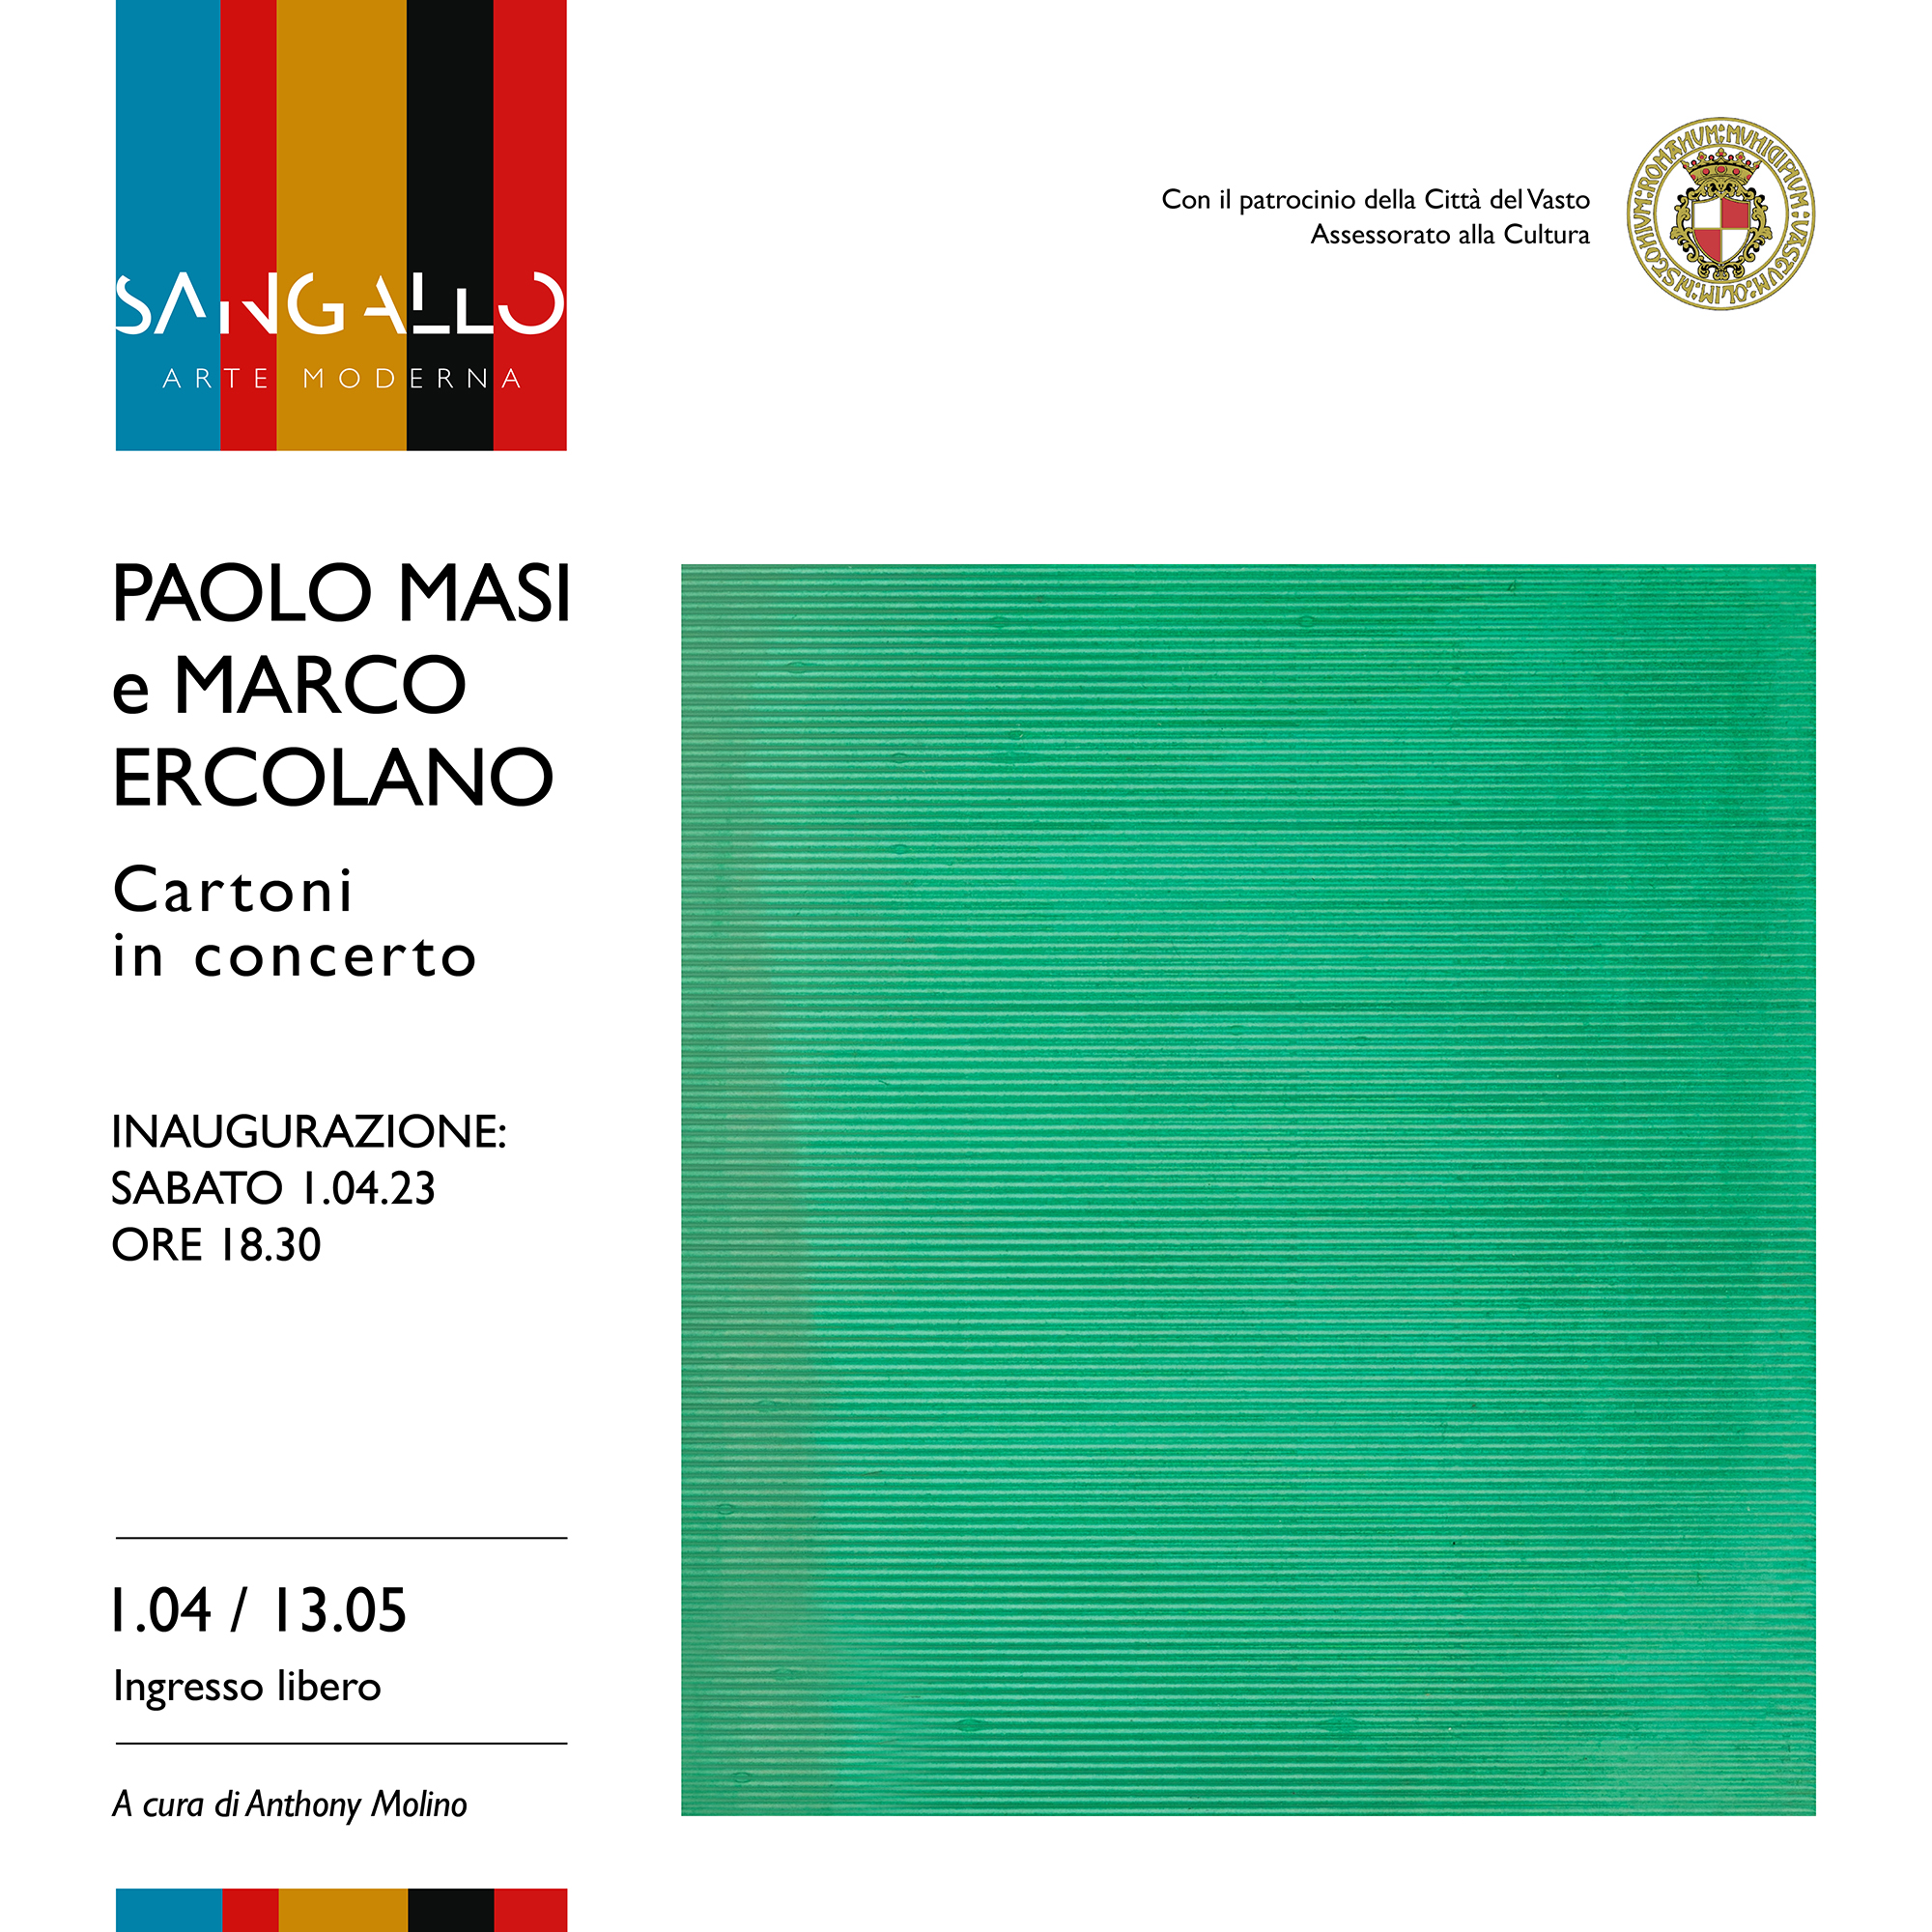 Mostra dal titolo “Paolo Masi e Marco Ercolano. Cartoni in concerto”